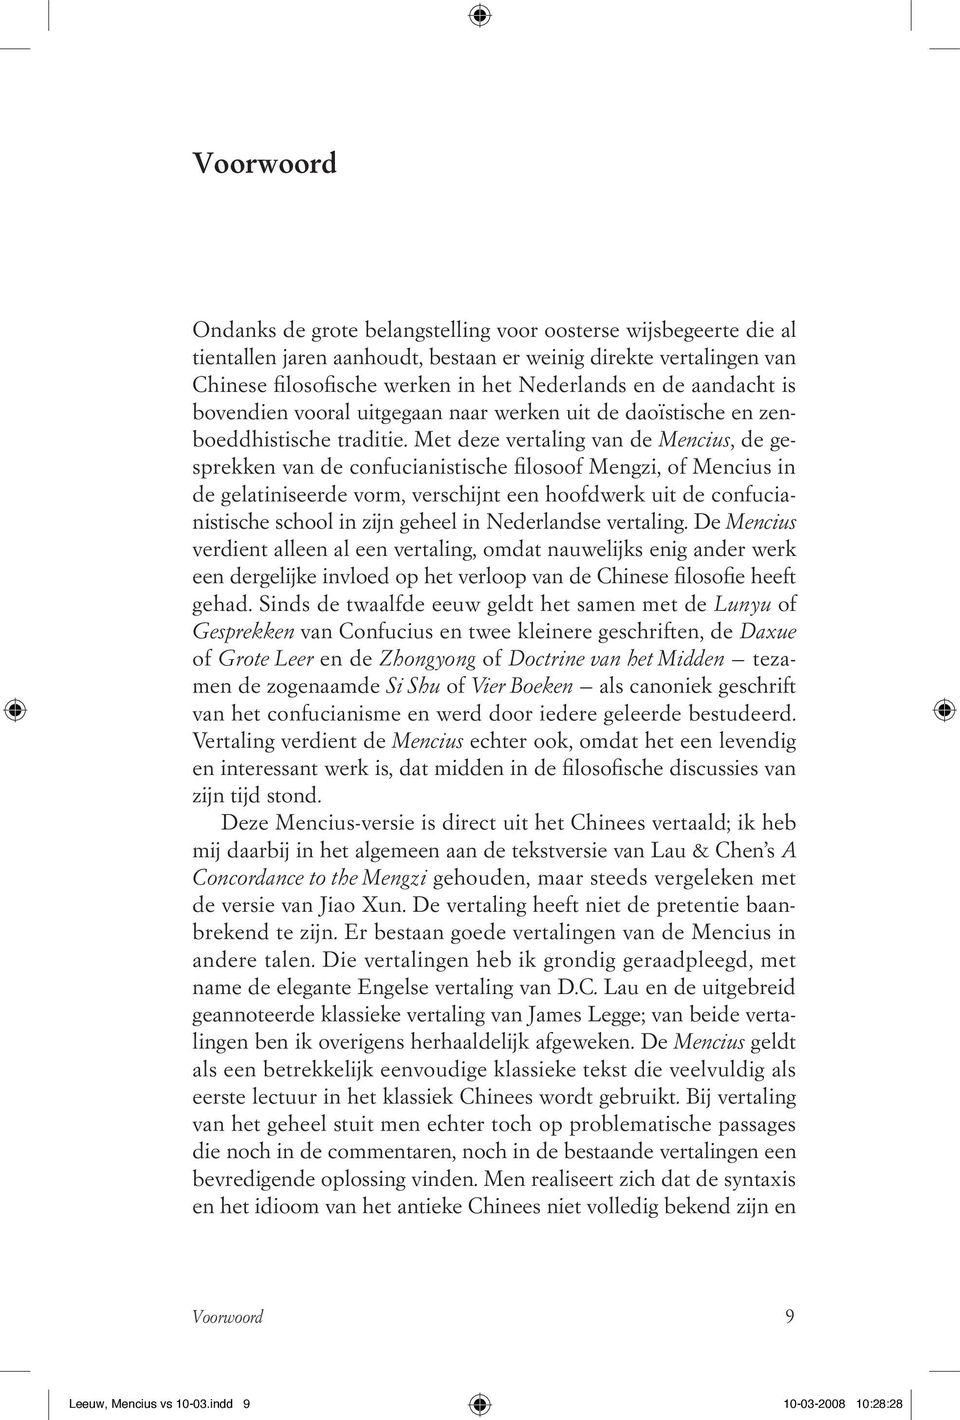 Met deze vertaling van de Mencius, de gesprekken van de confucianistische filosoof Mengzi, of Mencius in de gelatiniseerde vorm, verschijnt een hoofdwerk uit de confucianistische school in zijn